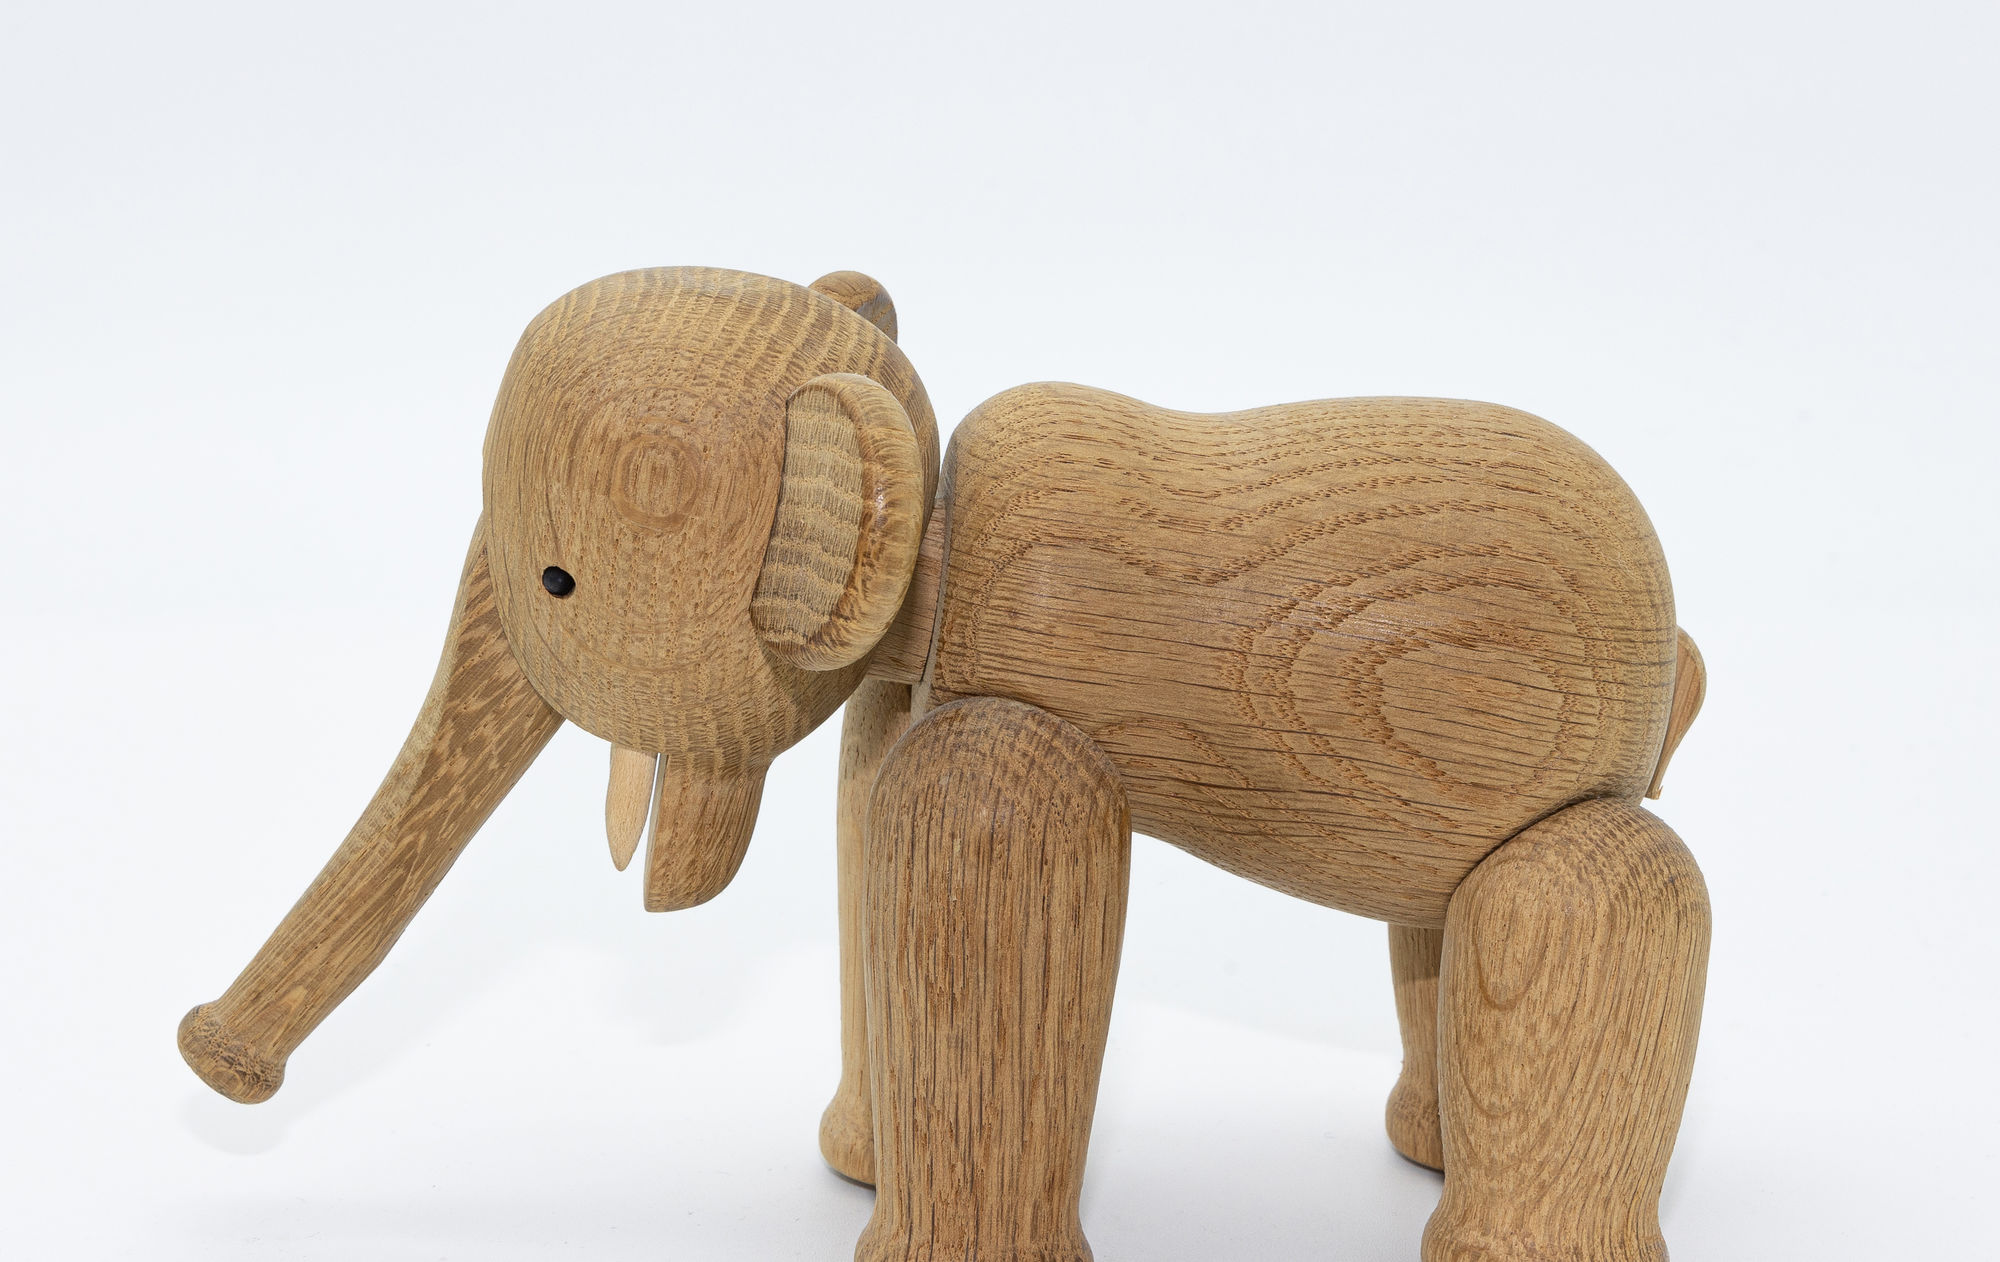 Kay Bojesen wooden elephant